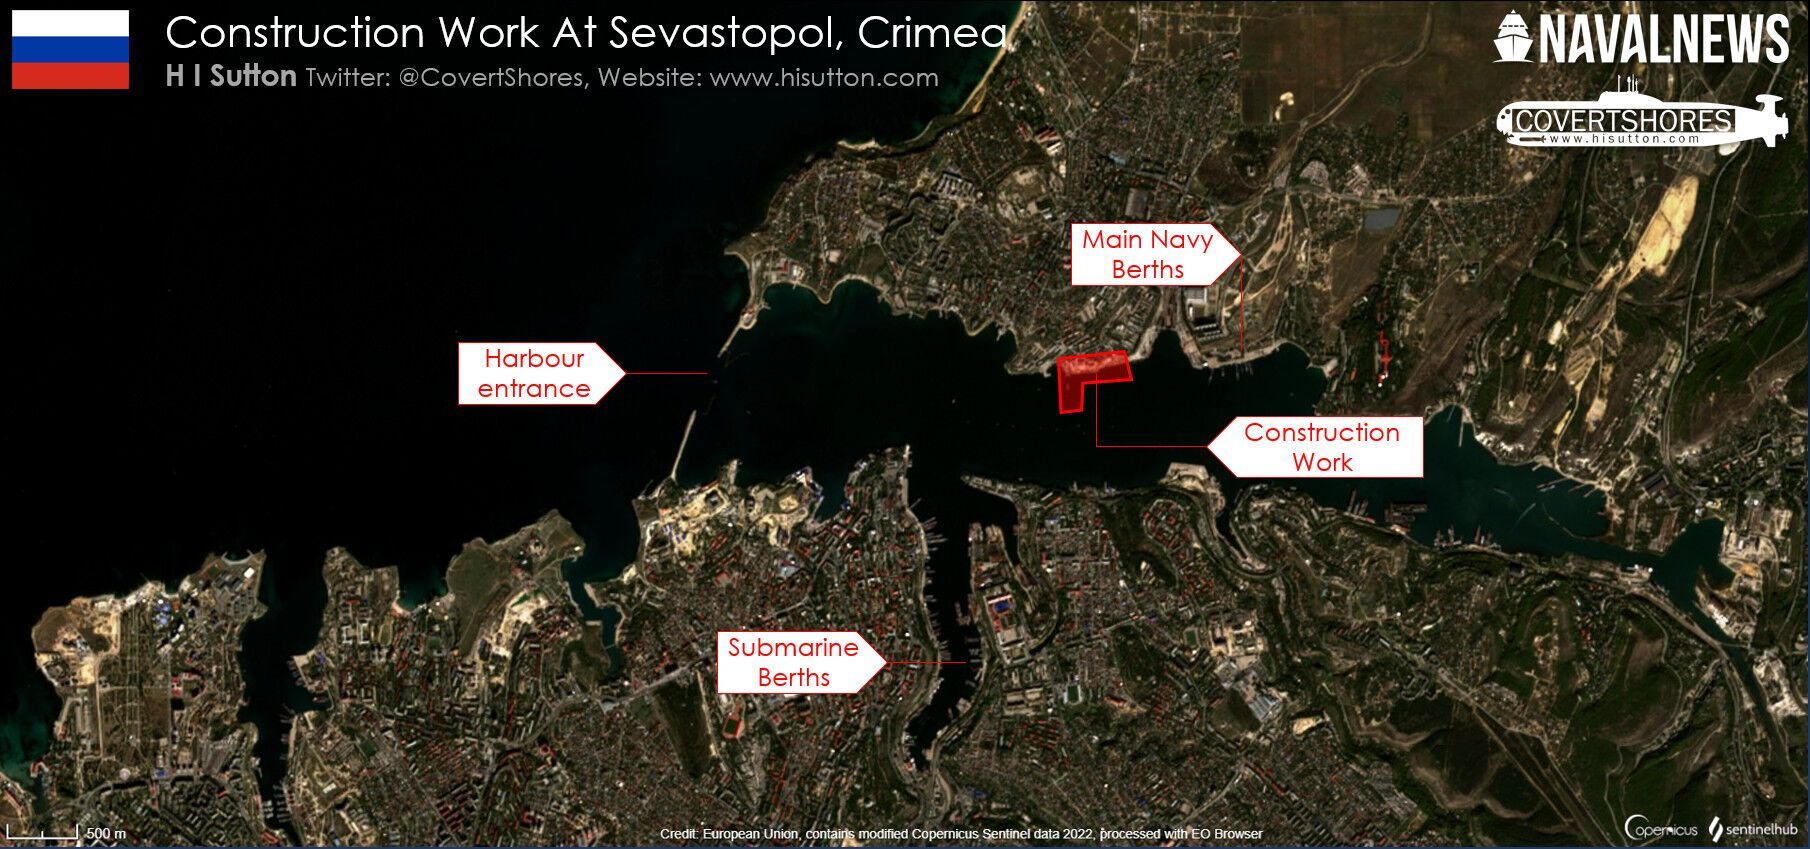 Огляд району будівництва в Севастополі. До початку цього року цей район використовувався патрульними кораблями ФСБ